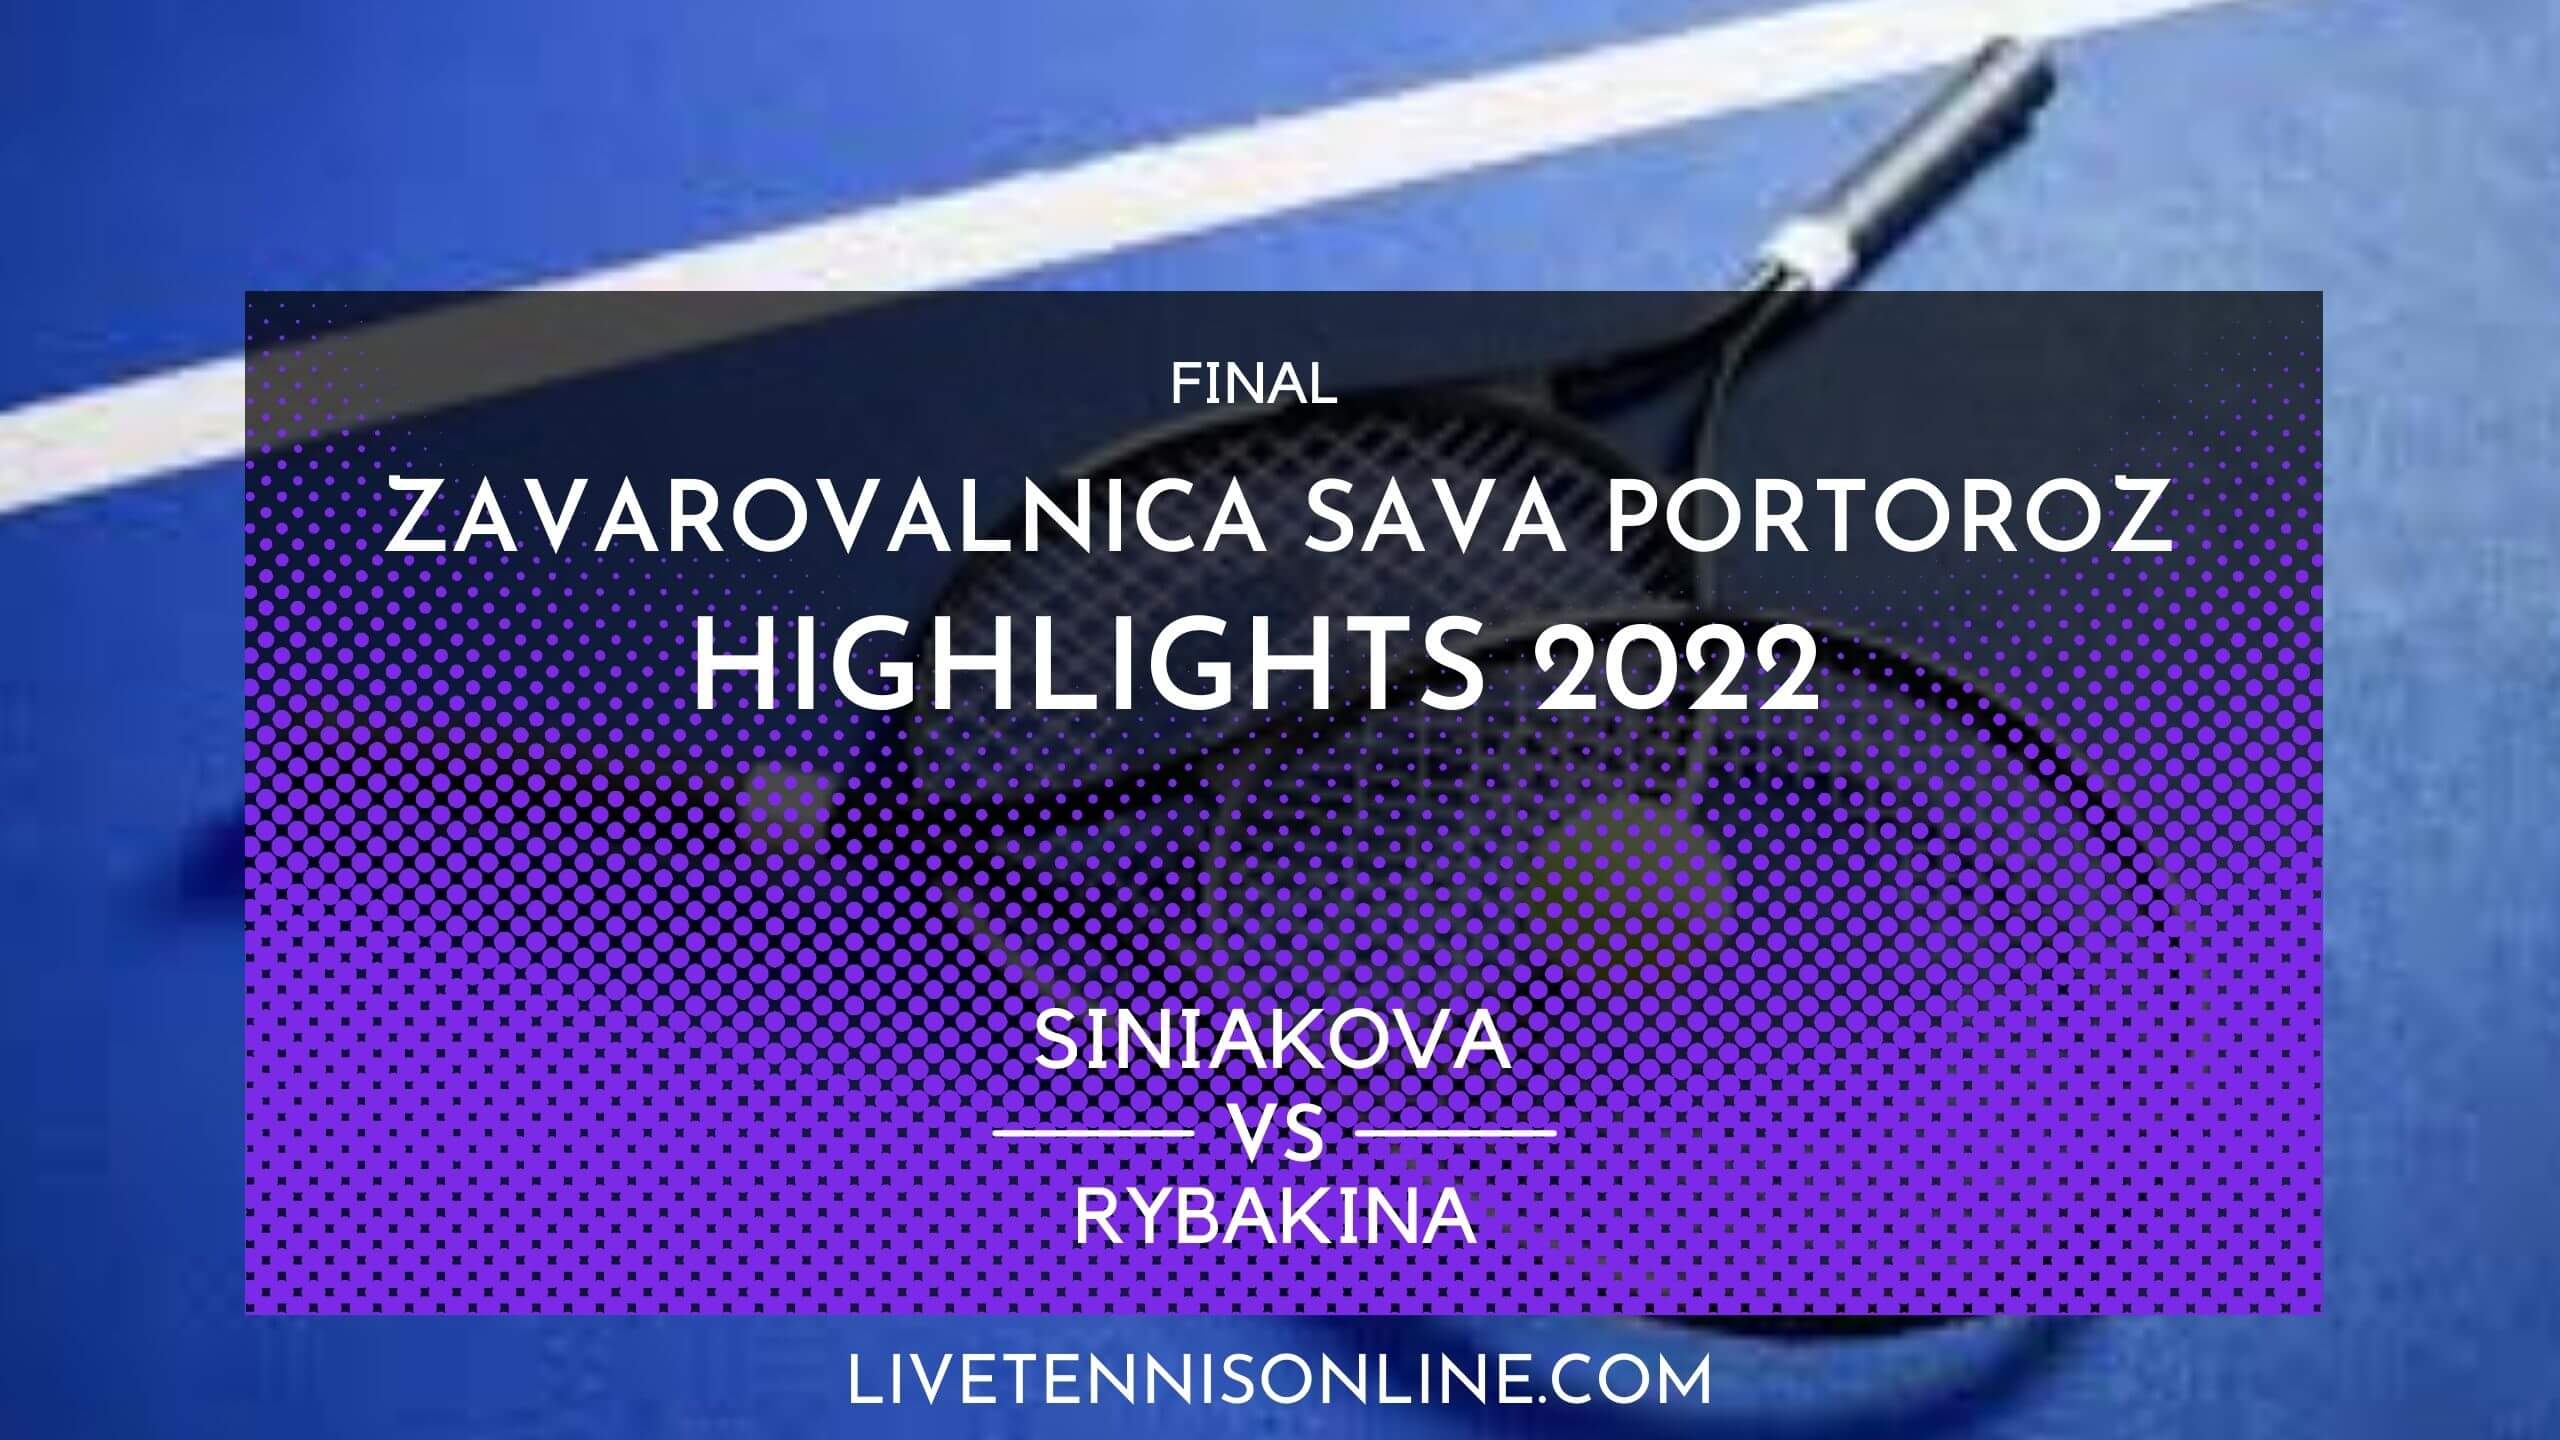 Siniakova Vs Rybakina Final Highlights 2022 Slovenia Open